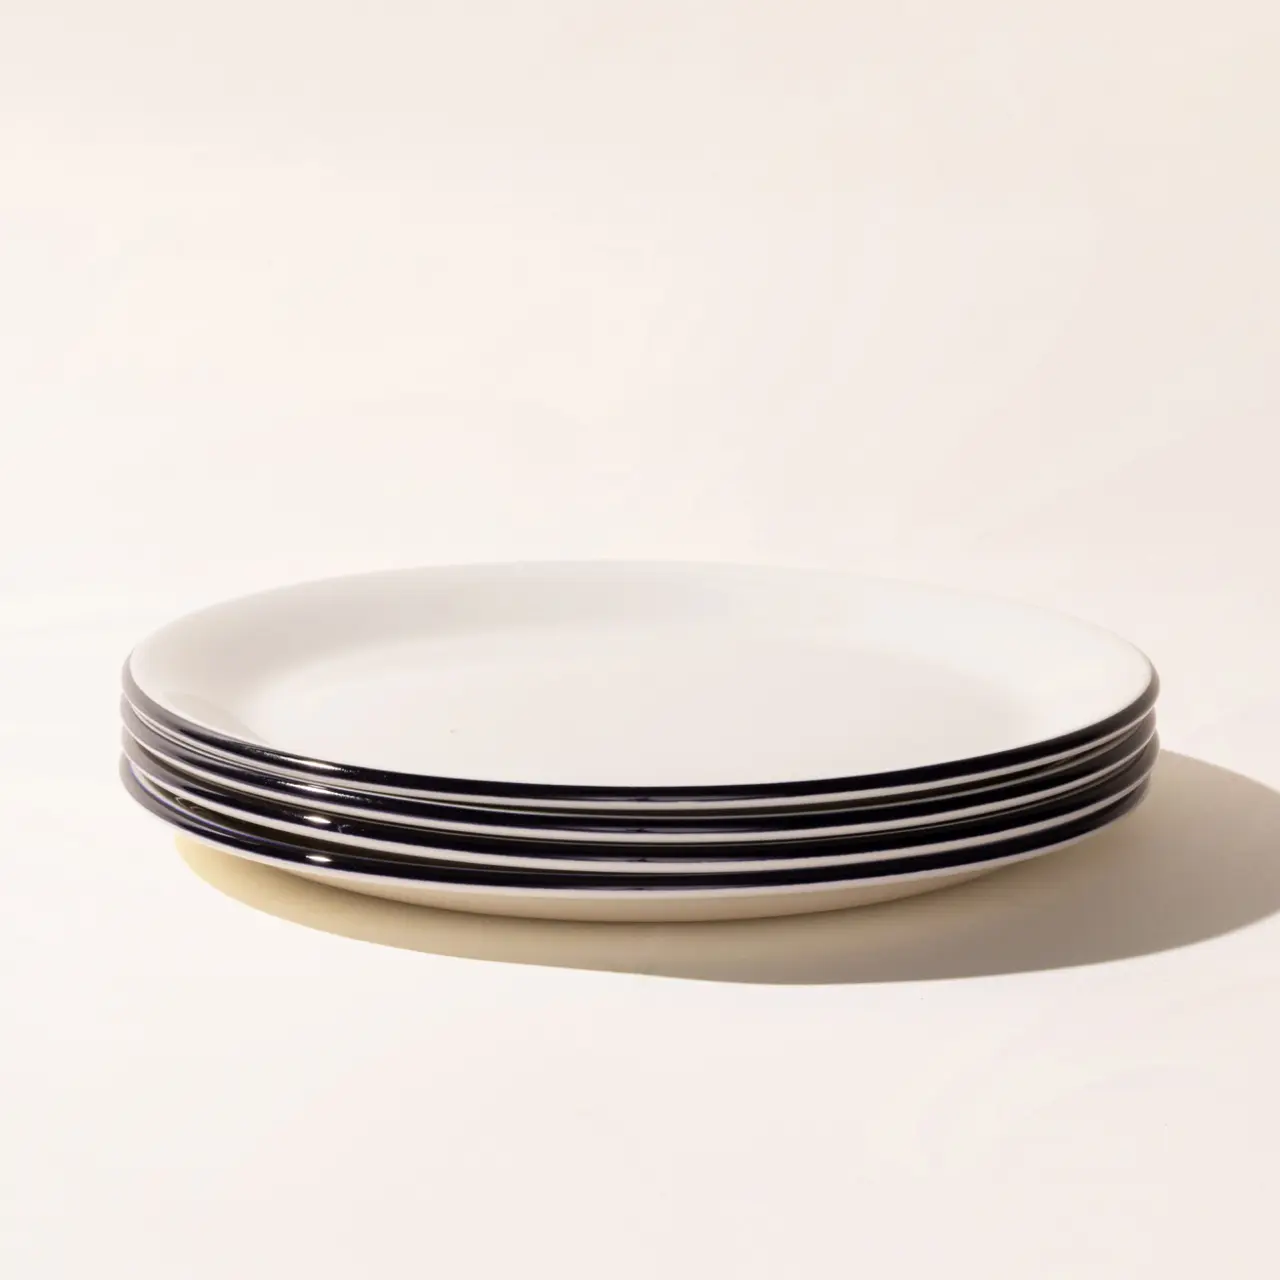 Dinner Plates 4-Pack